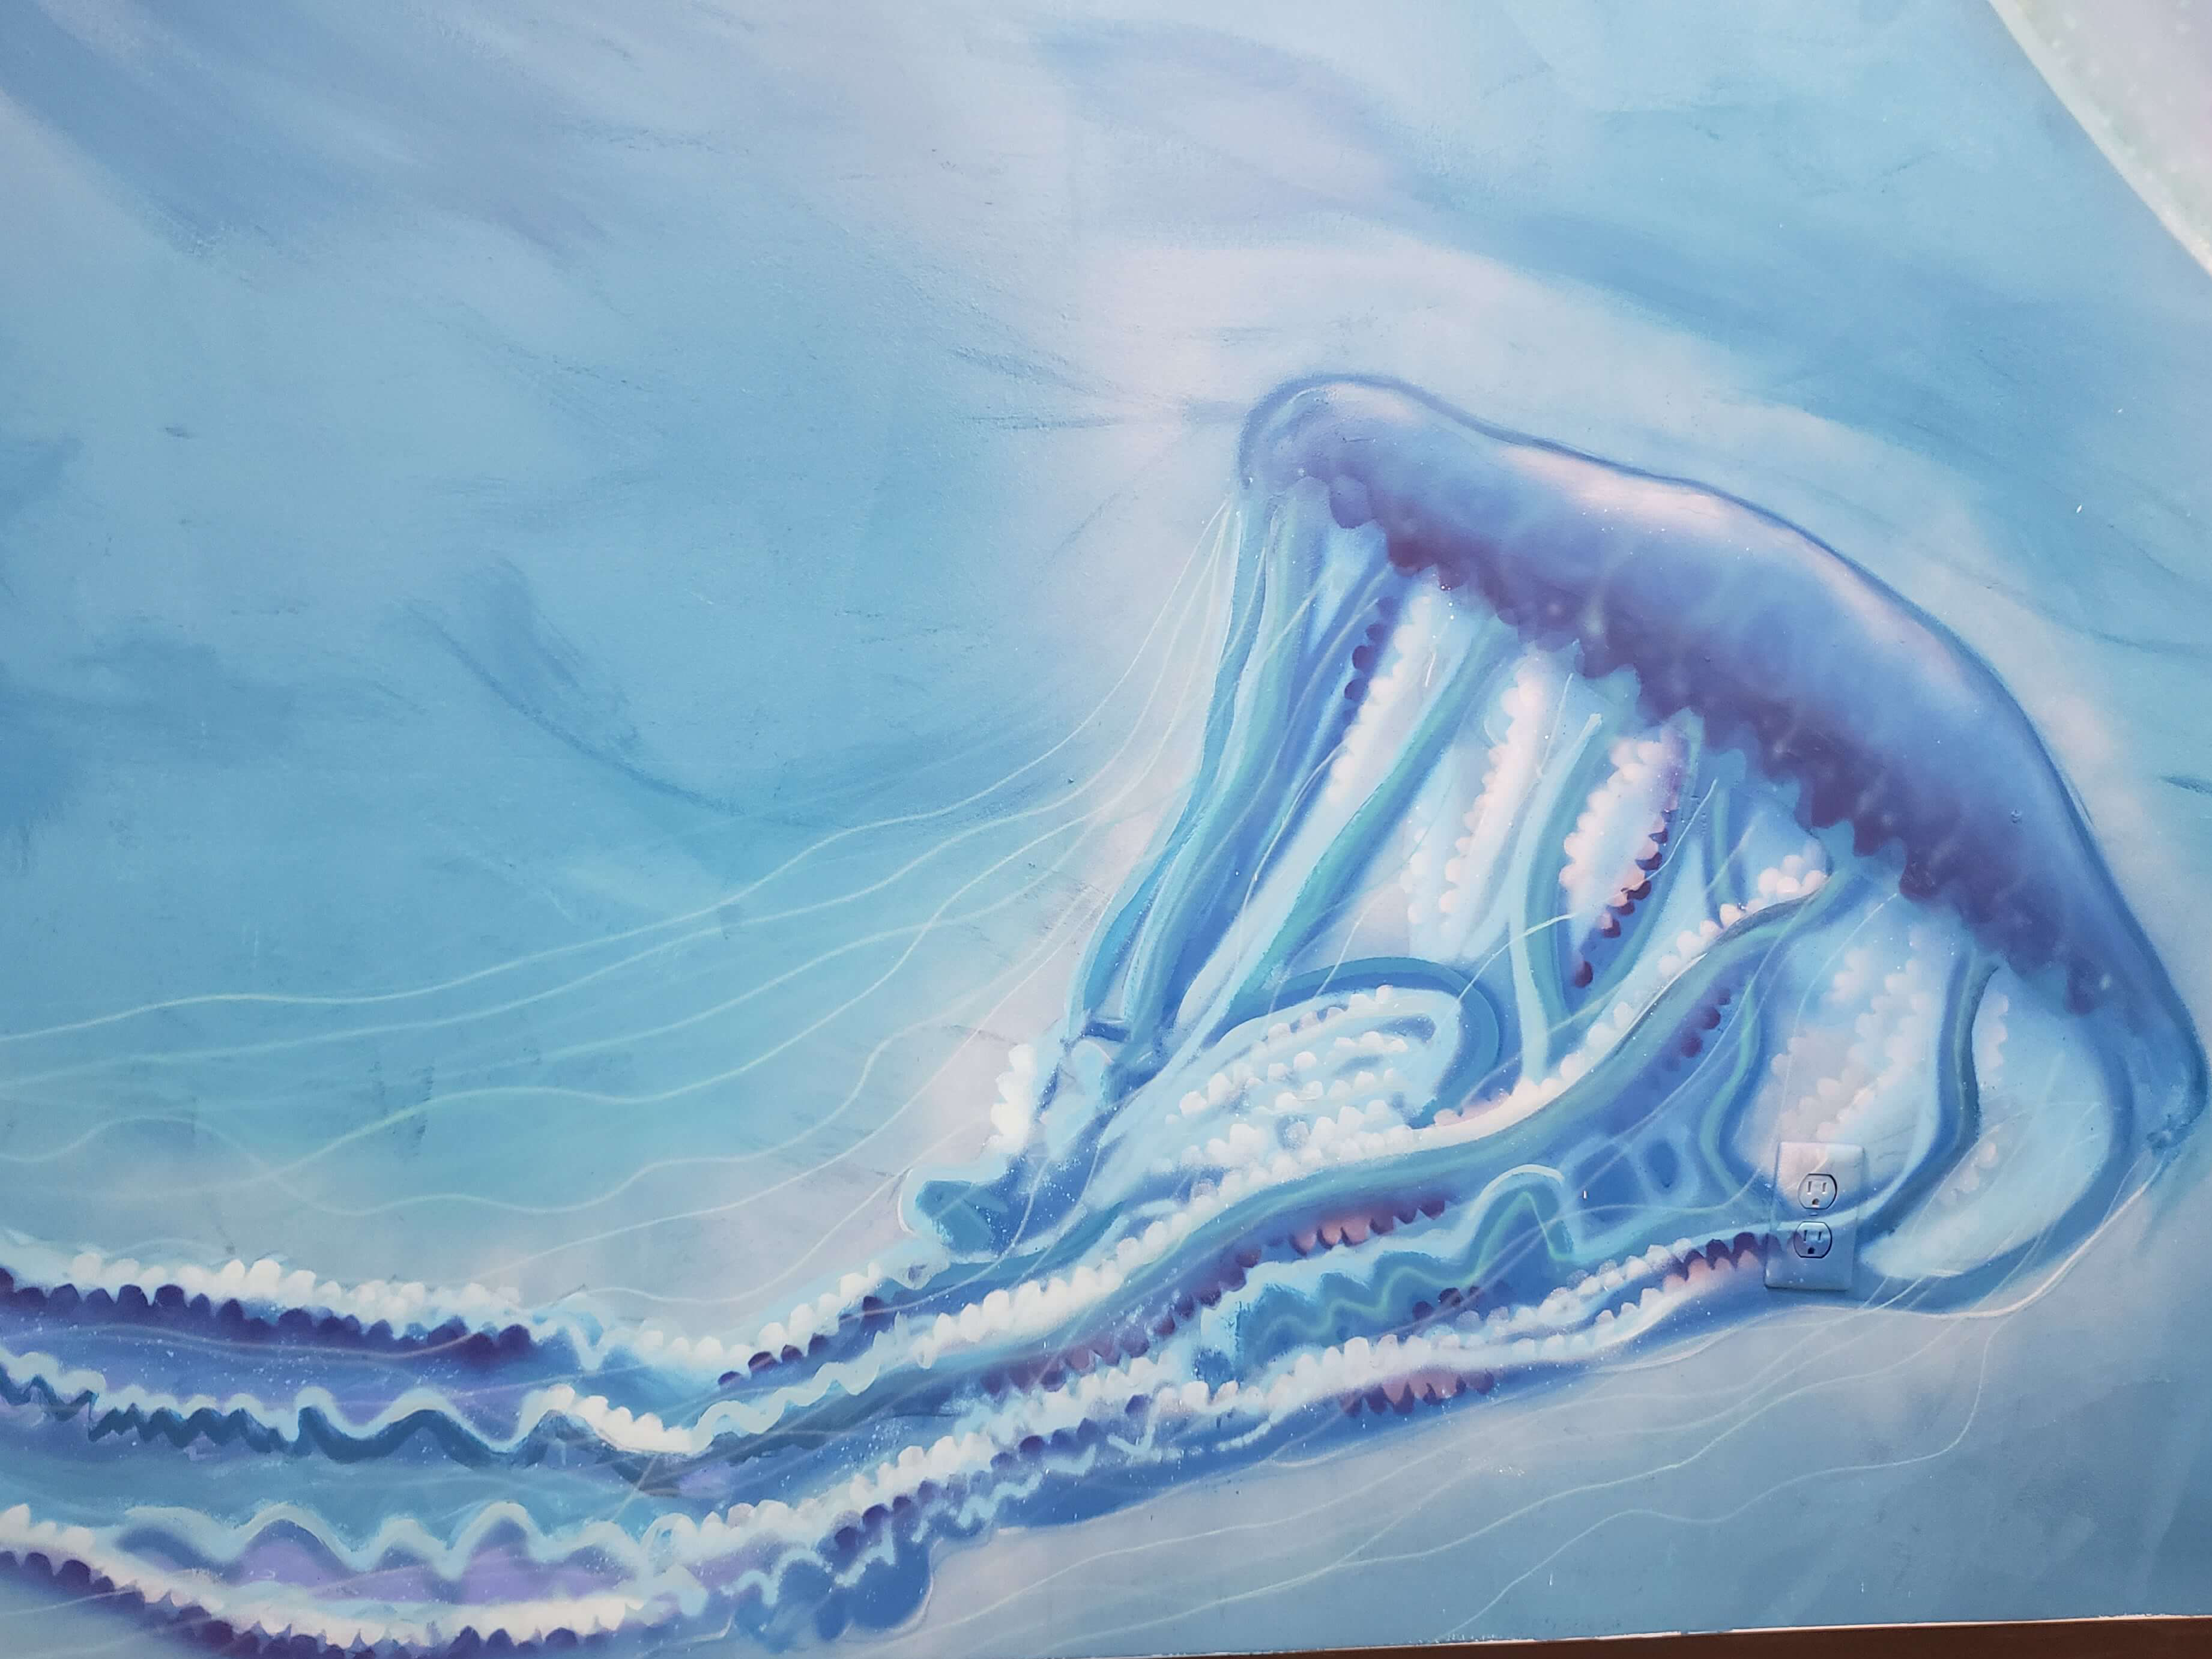 Drake Arnold Mural at Mote Marine Laboratory and aquarium